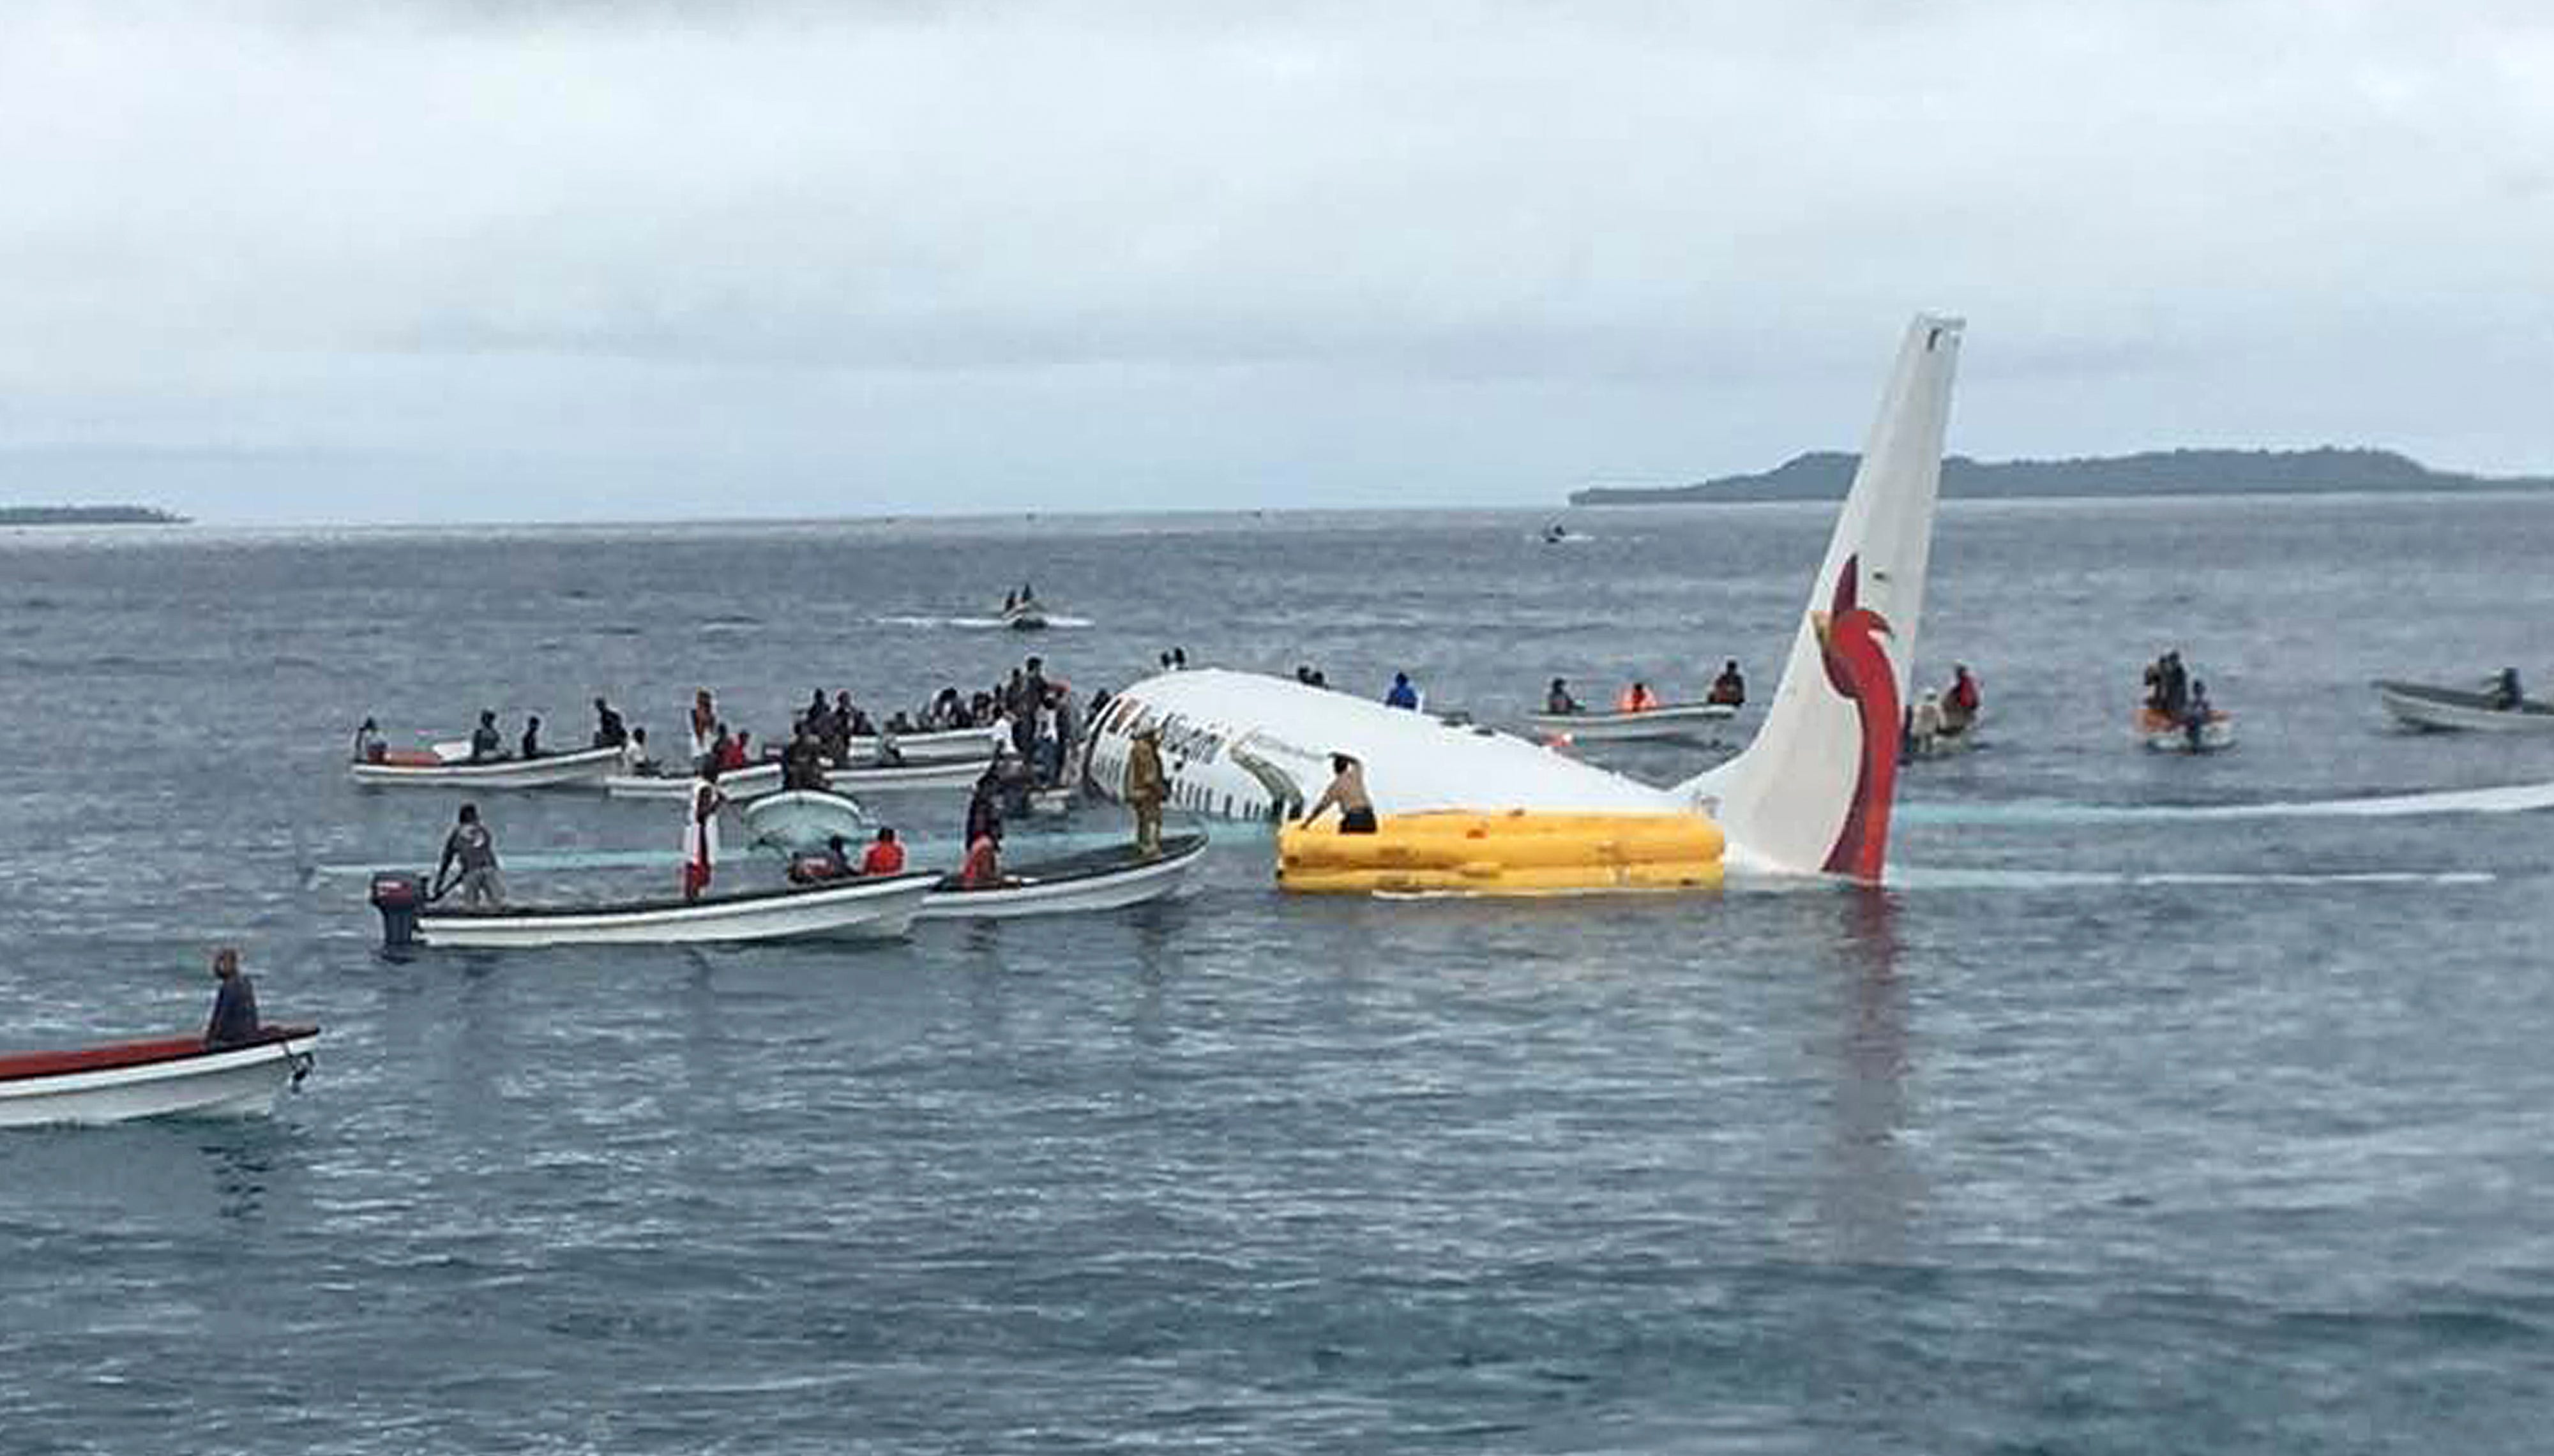 Самолет приземляющийся на воду. Аварийная посадка a320 на Гудзон запись. Самолёта Boeing 737 посадка на воду. Самолет Air France, который упал в Атлантический океан в 2009 году. Самолет упал в воду.